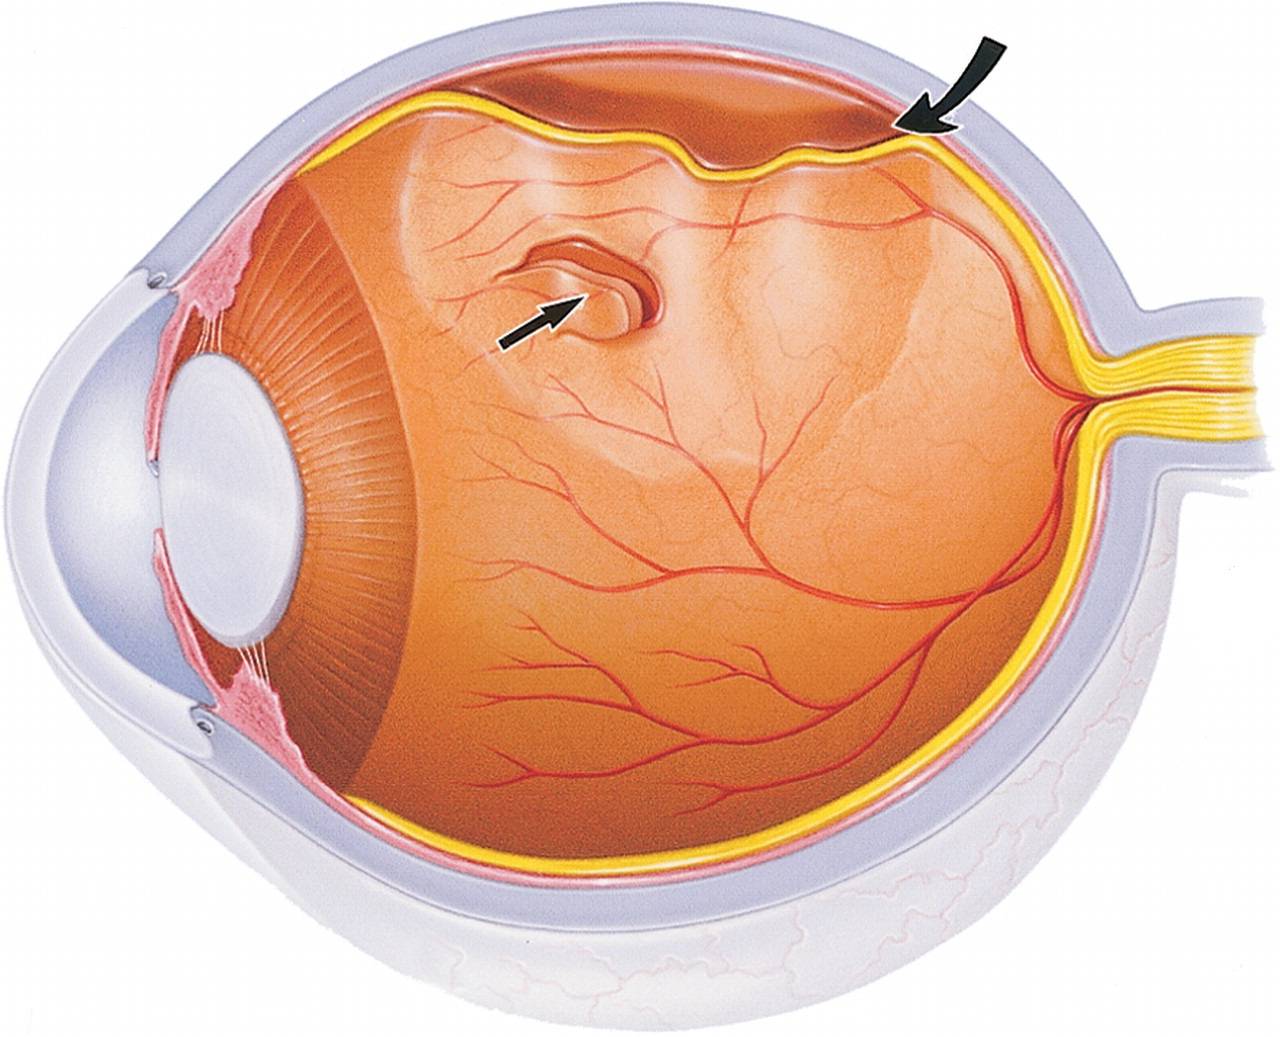 Отслойка сетчатки глаза: фото, симптомы, лечение, классификация, последствия и профилактика отслойки сетчатки